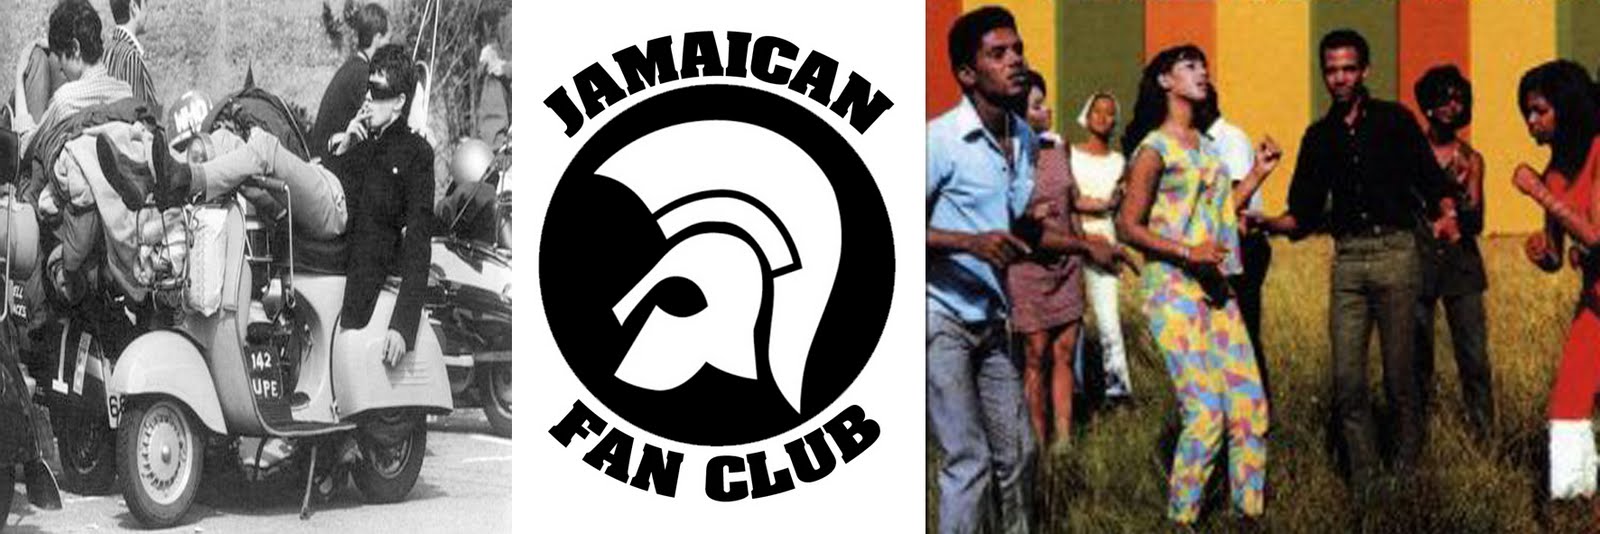 JAMAICAN FAN CLUB